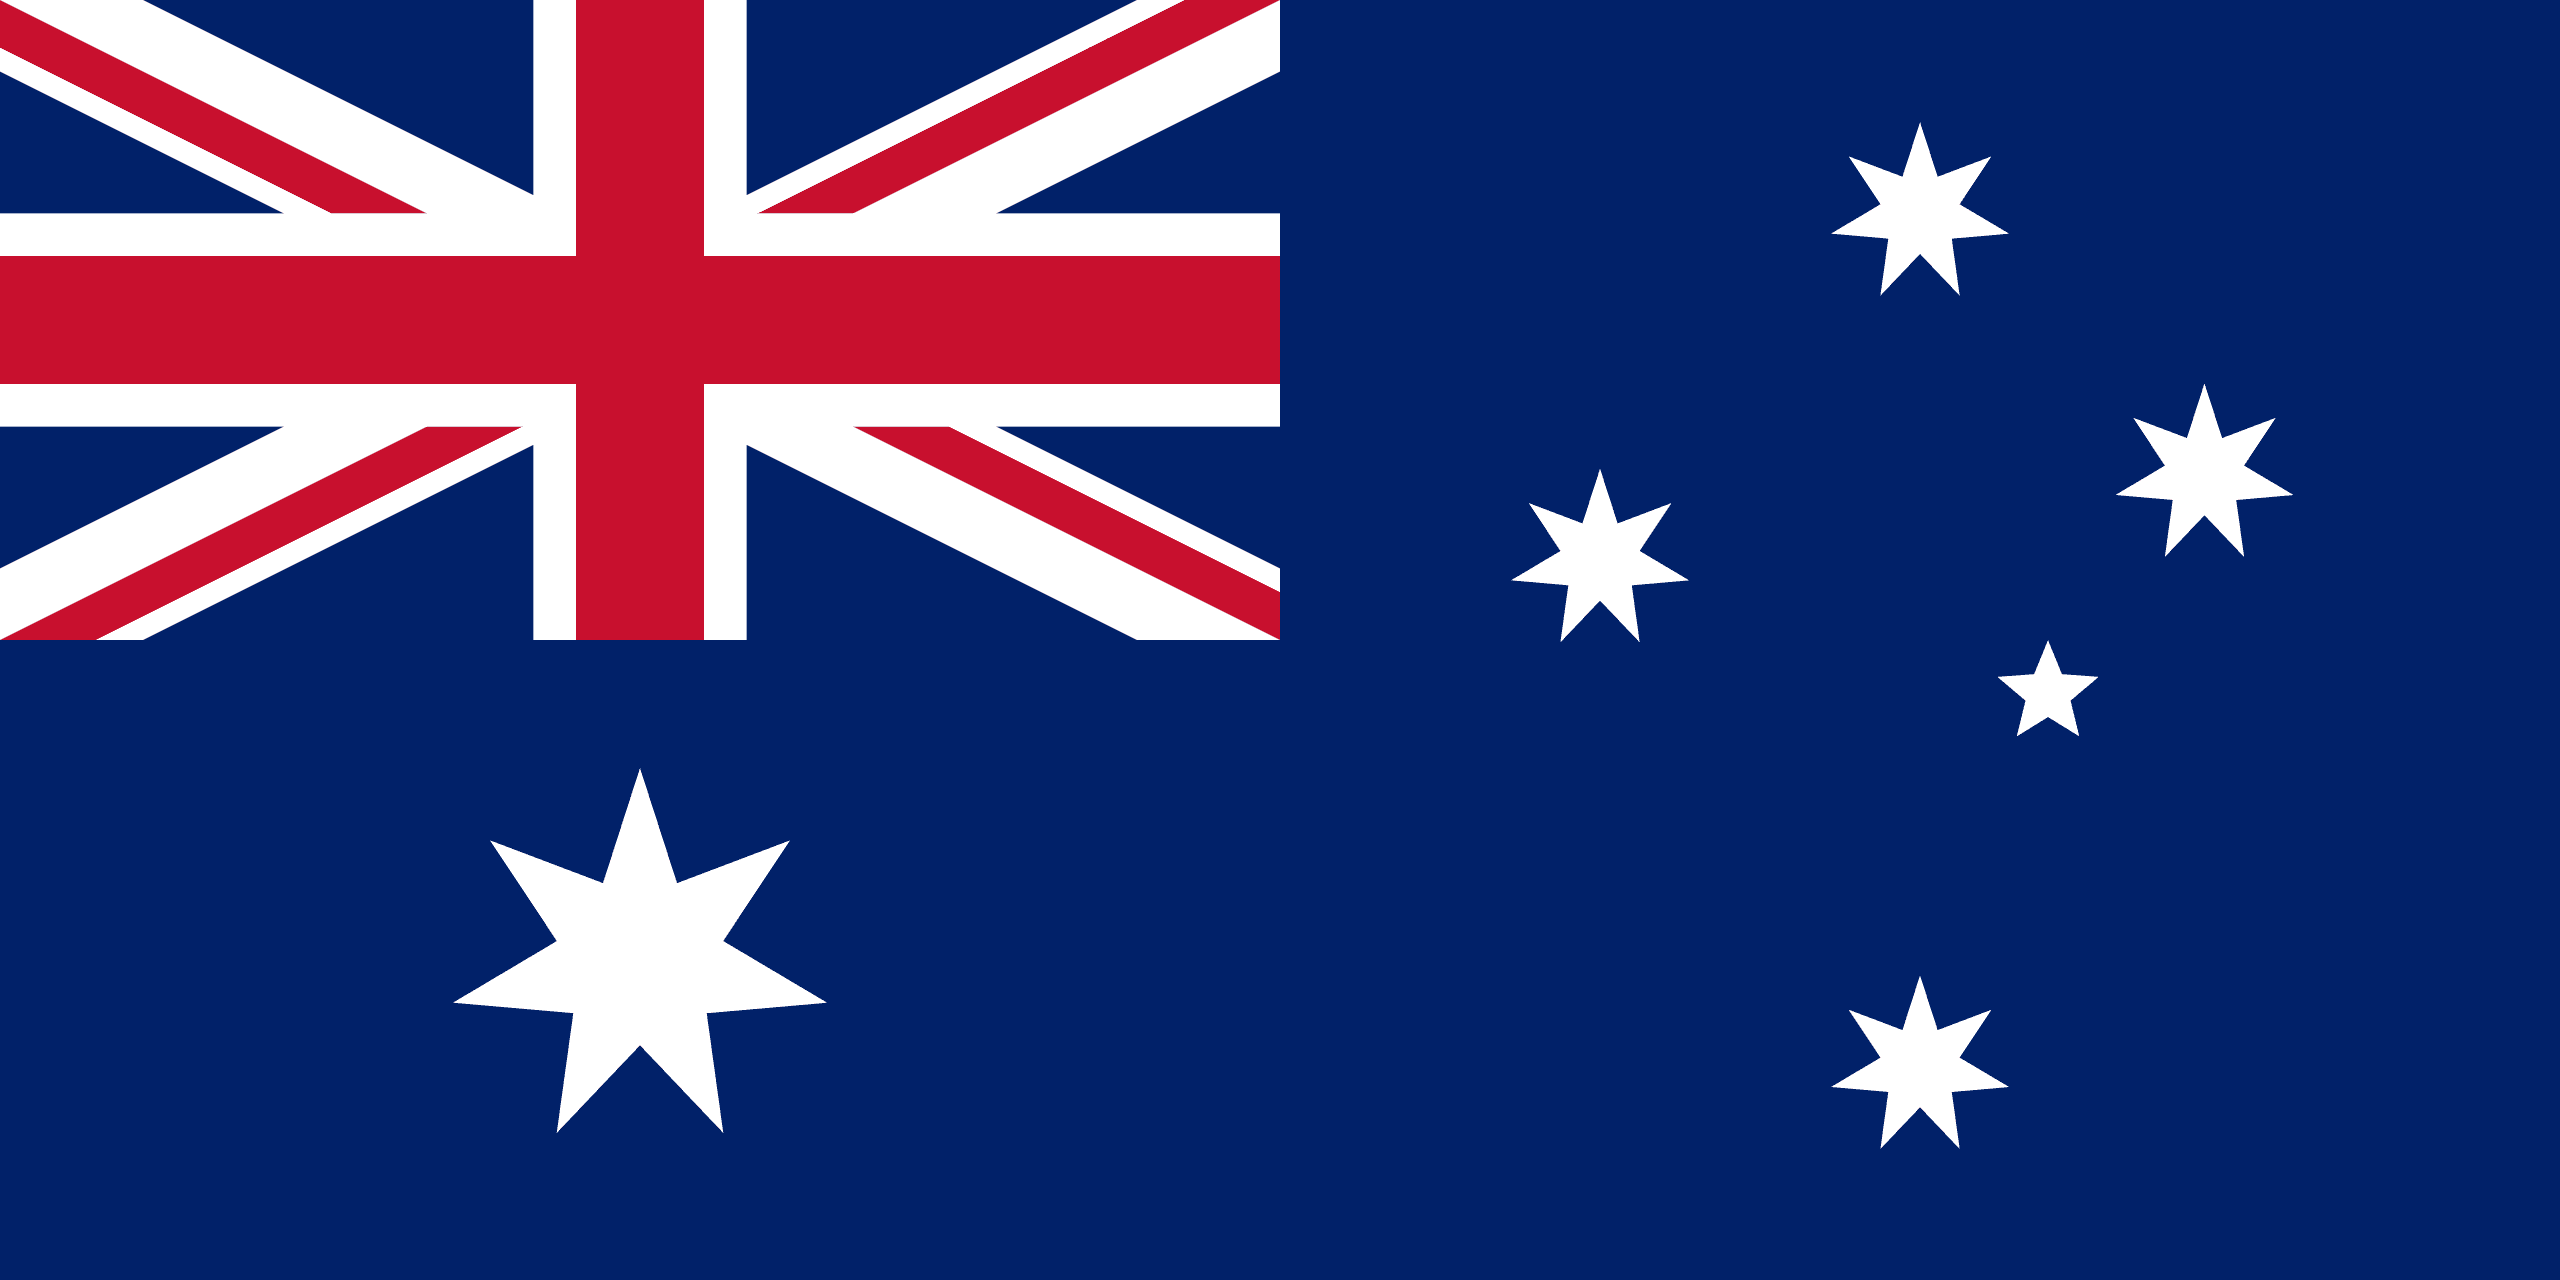 Australian flag image